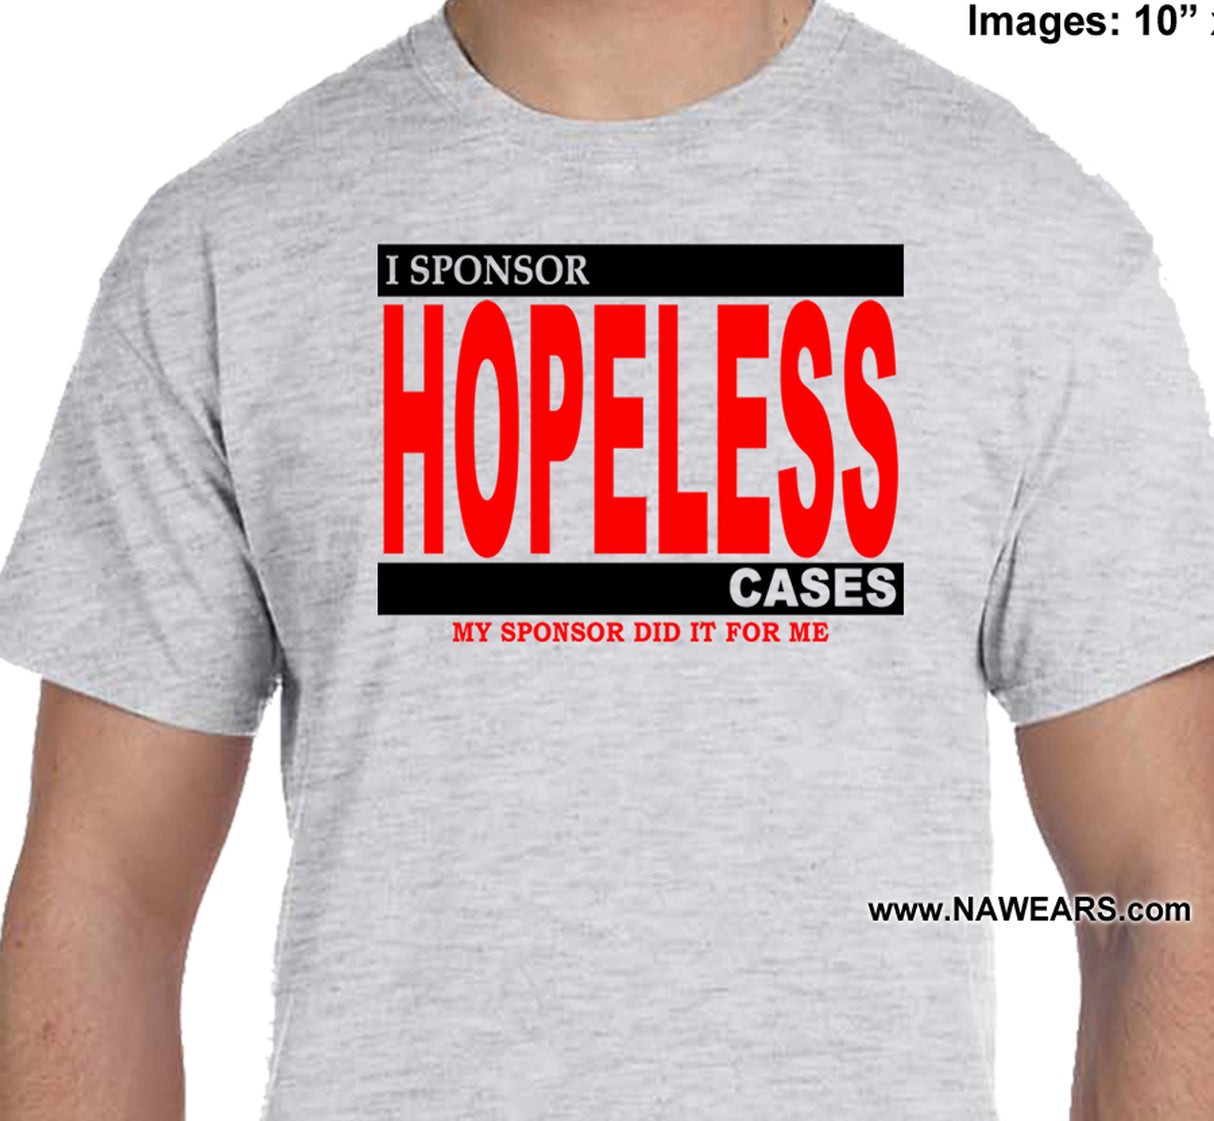 I Sponsor Hopeless Cases Tee